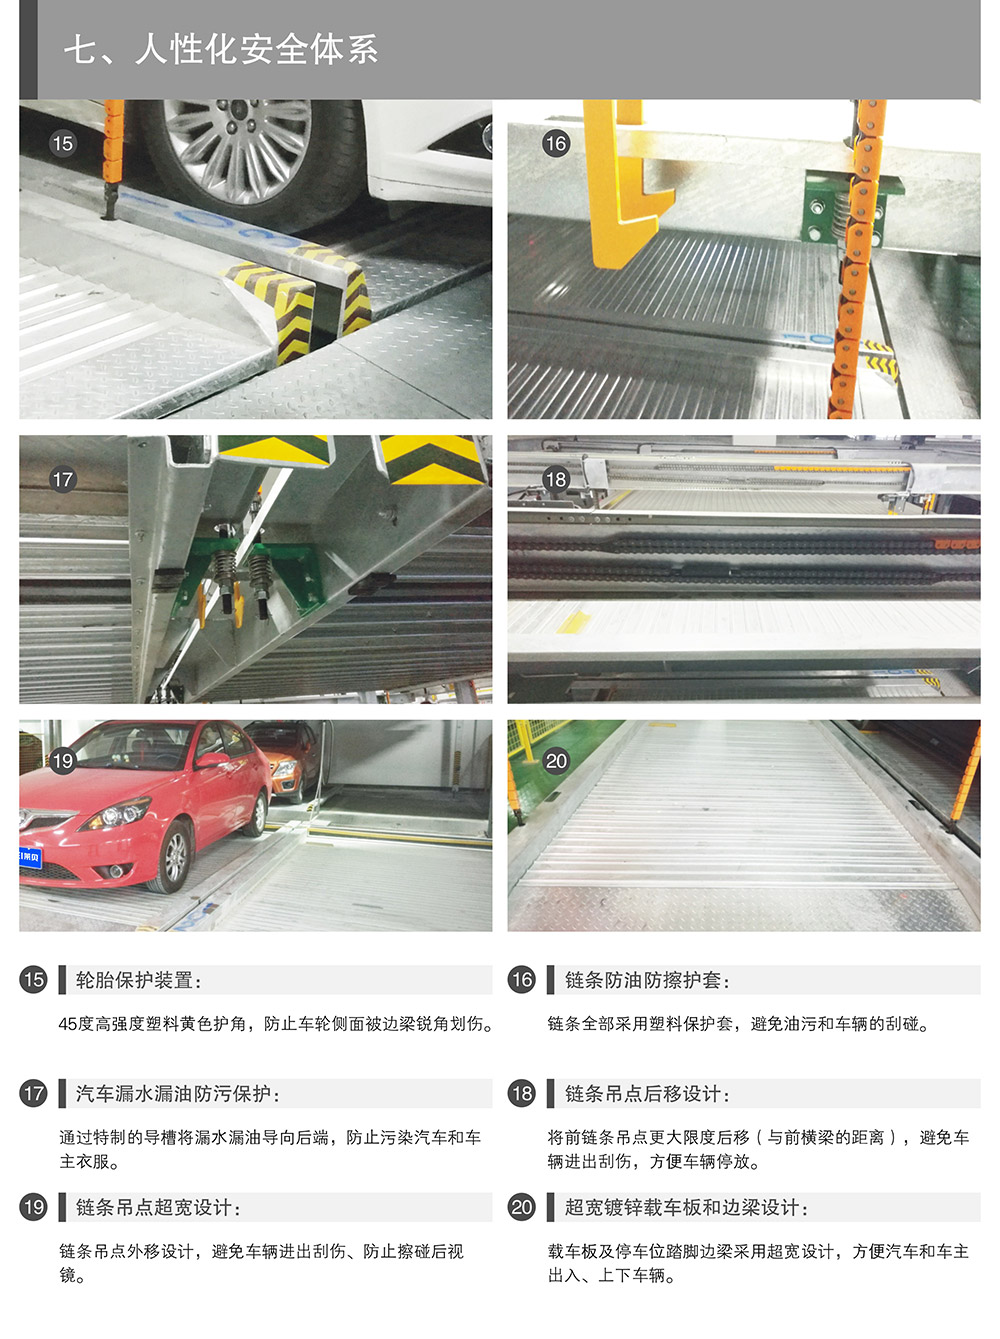 重庆PSH升降横移停车设备人性化安全体系.jpg